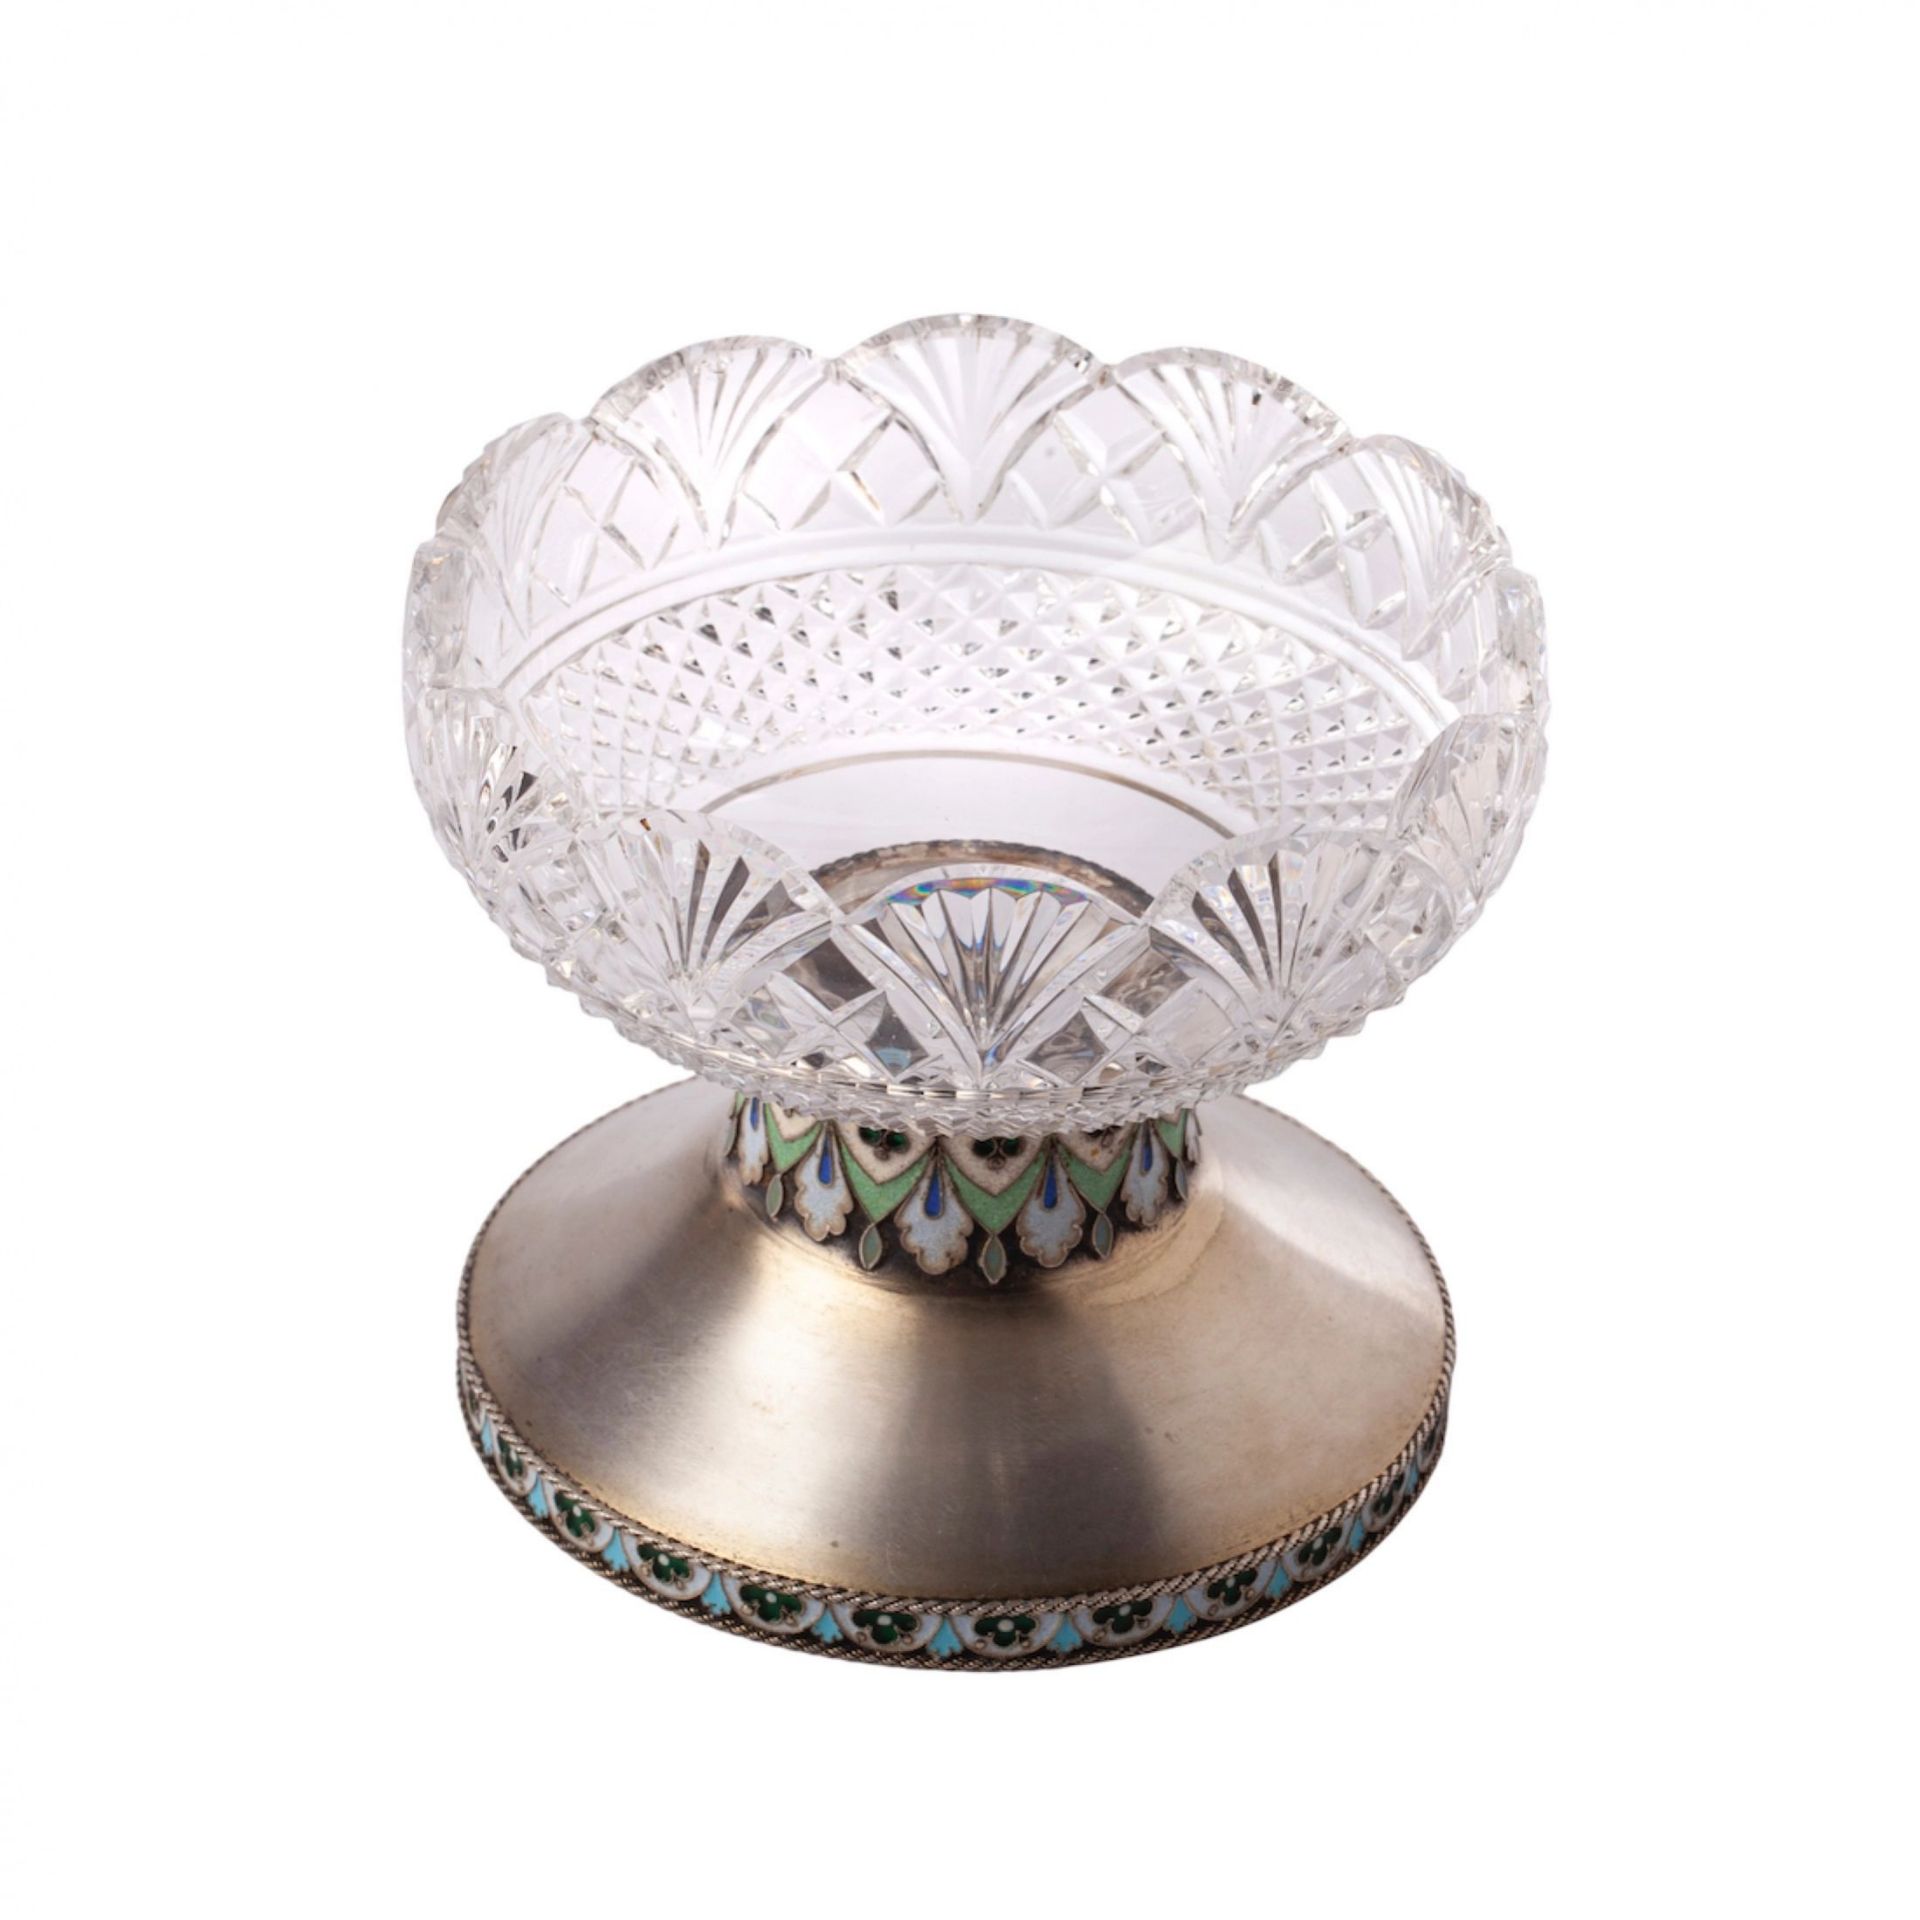 Ovchinnikov candy vase. Crystal in silver. - Bild 4 aus 4